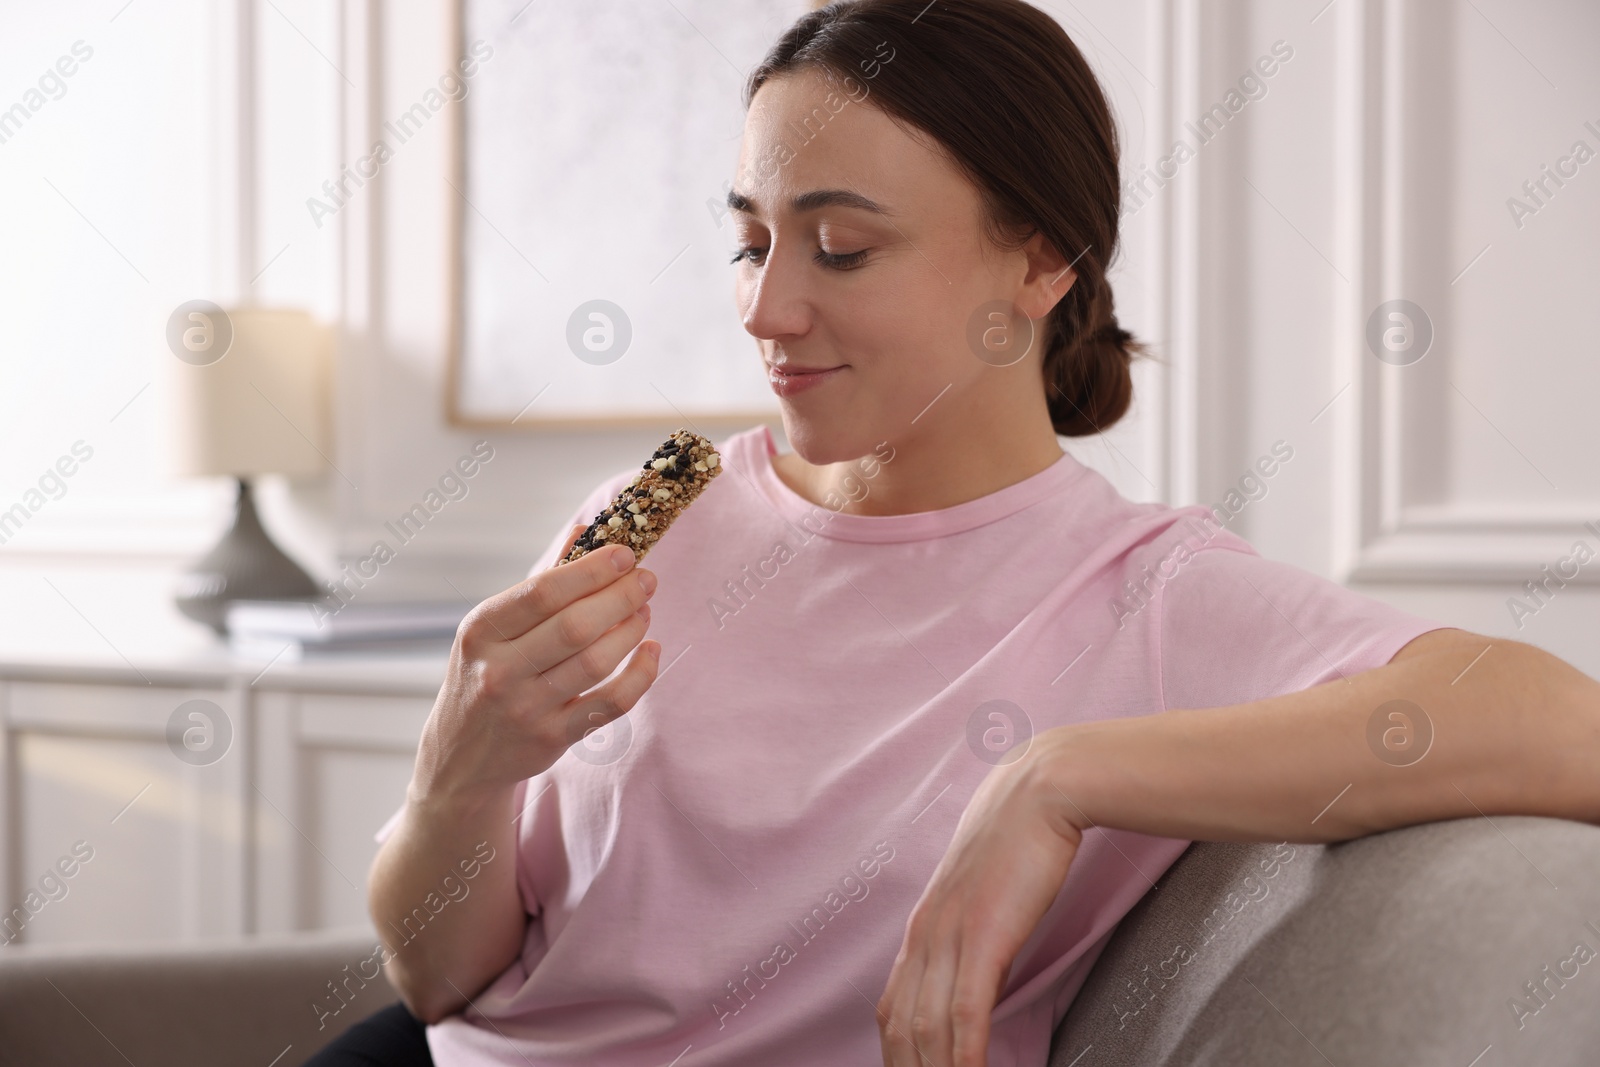 Photo of Woman eating tasty granola bar at home